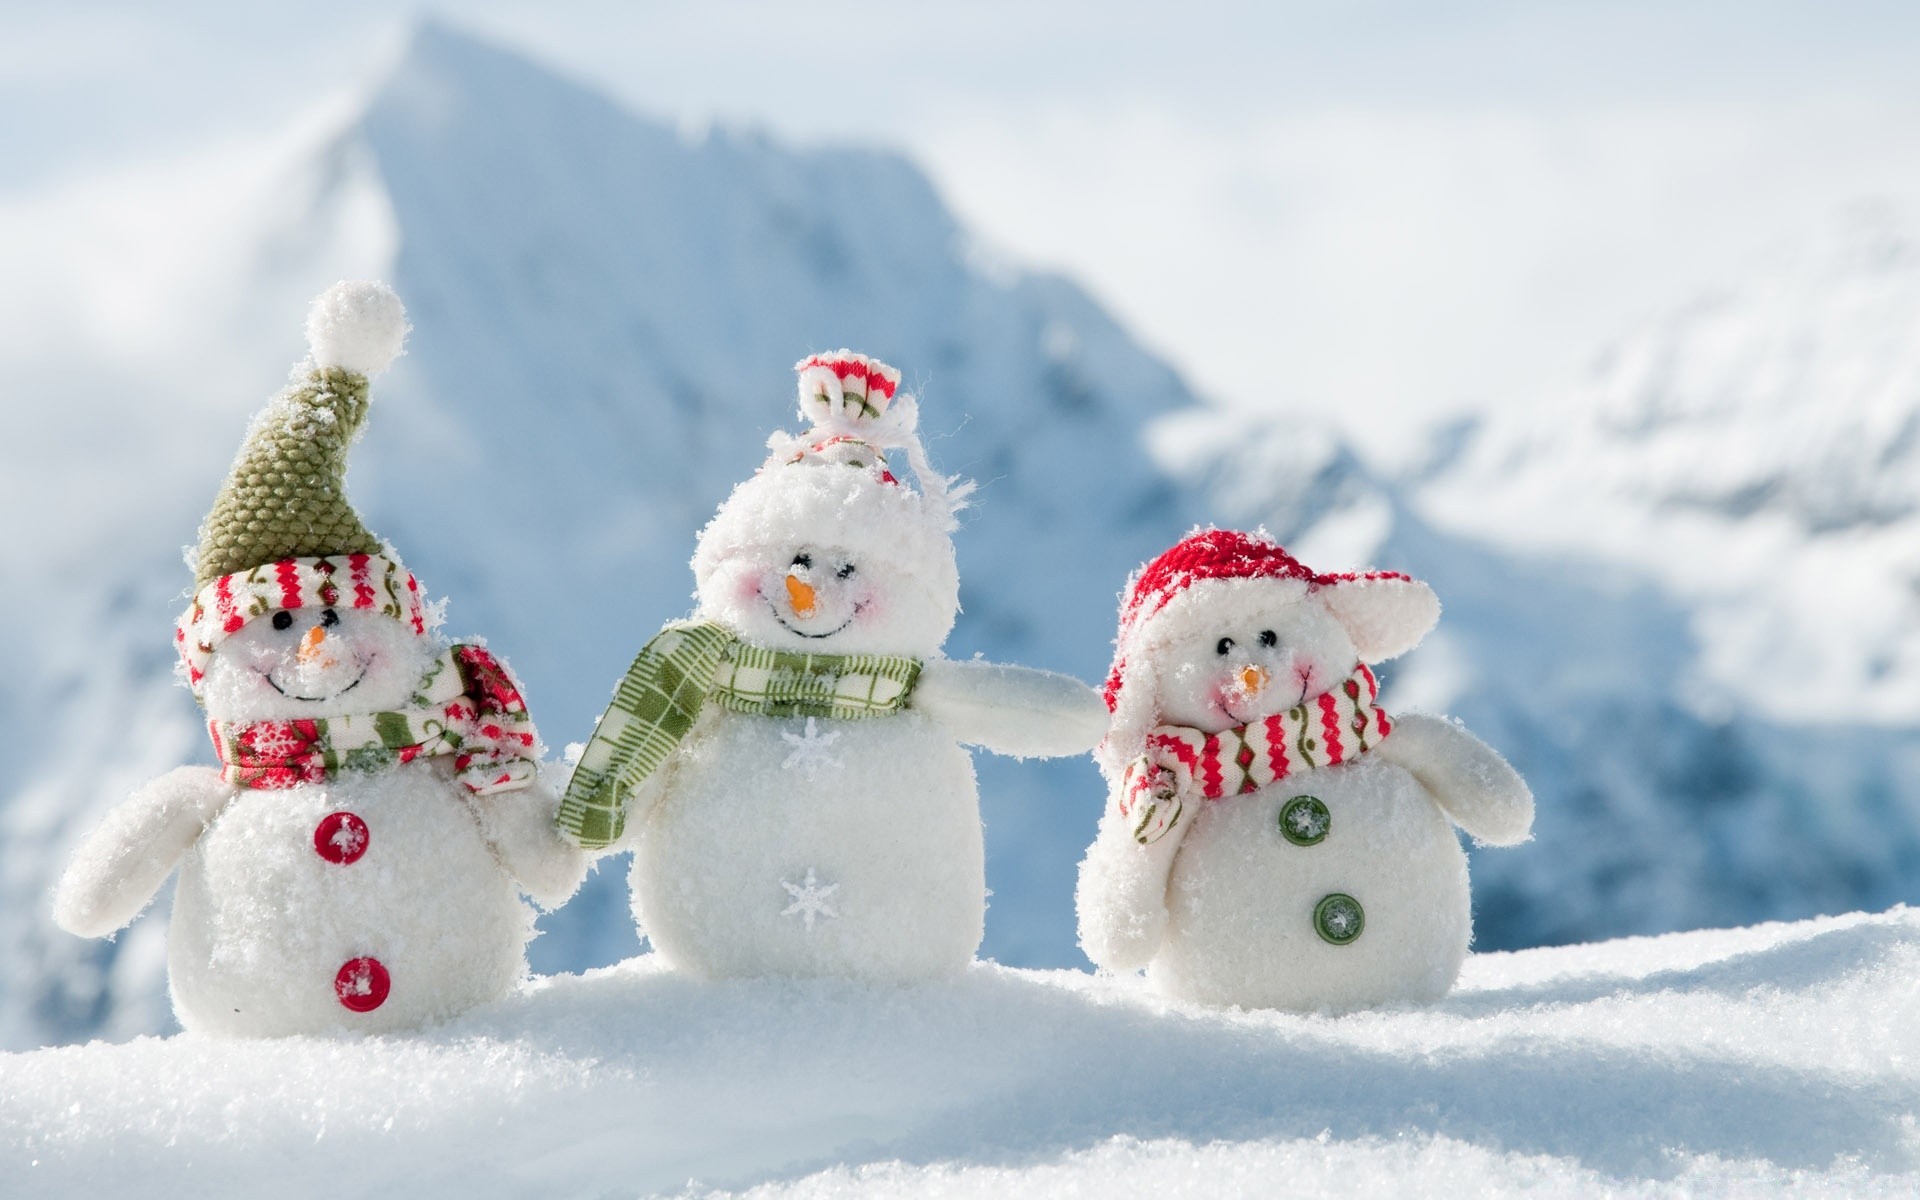 зима снег рождество снеговик мороз холодная сезон снежинка лед снег-белый снежок морозный удовольствие замороженные праздник на открытом воздухе традиционные пургу